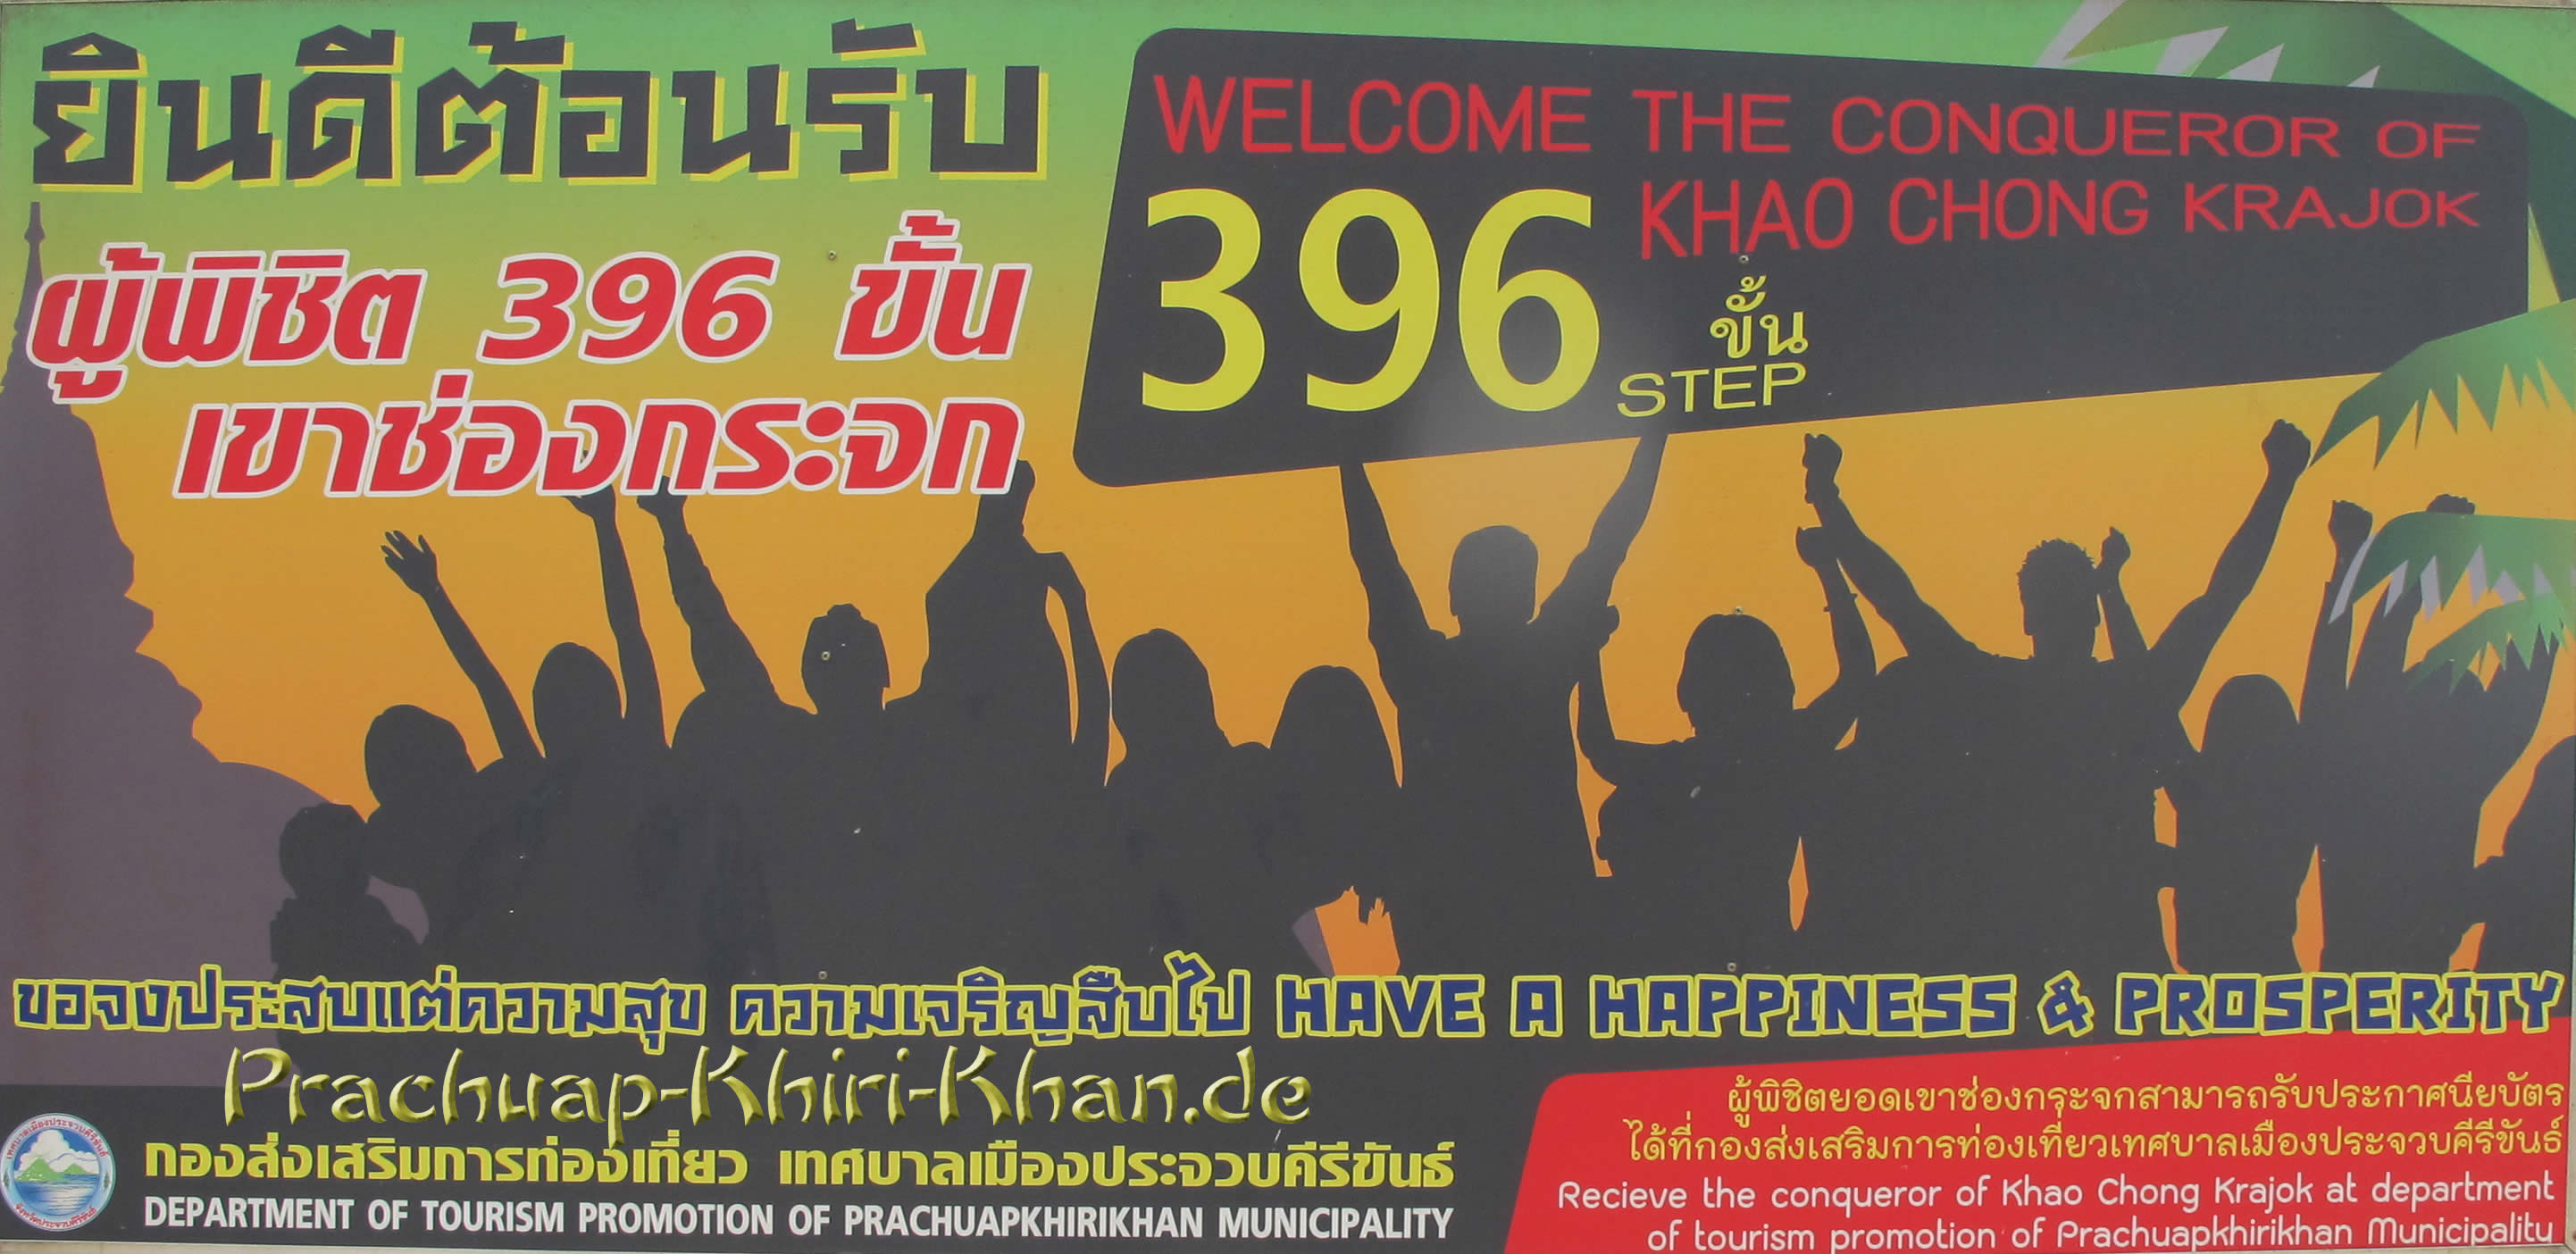 Willkommen, Bezwinger der 396 Stufen vom Khao Chong Kra Chok